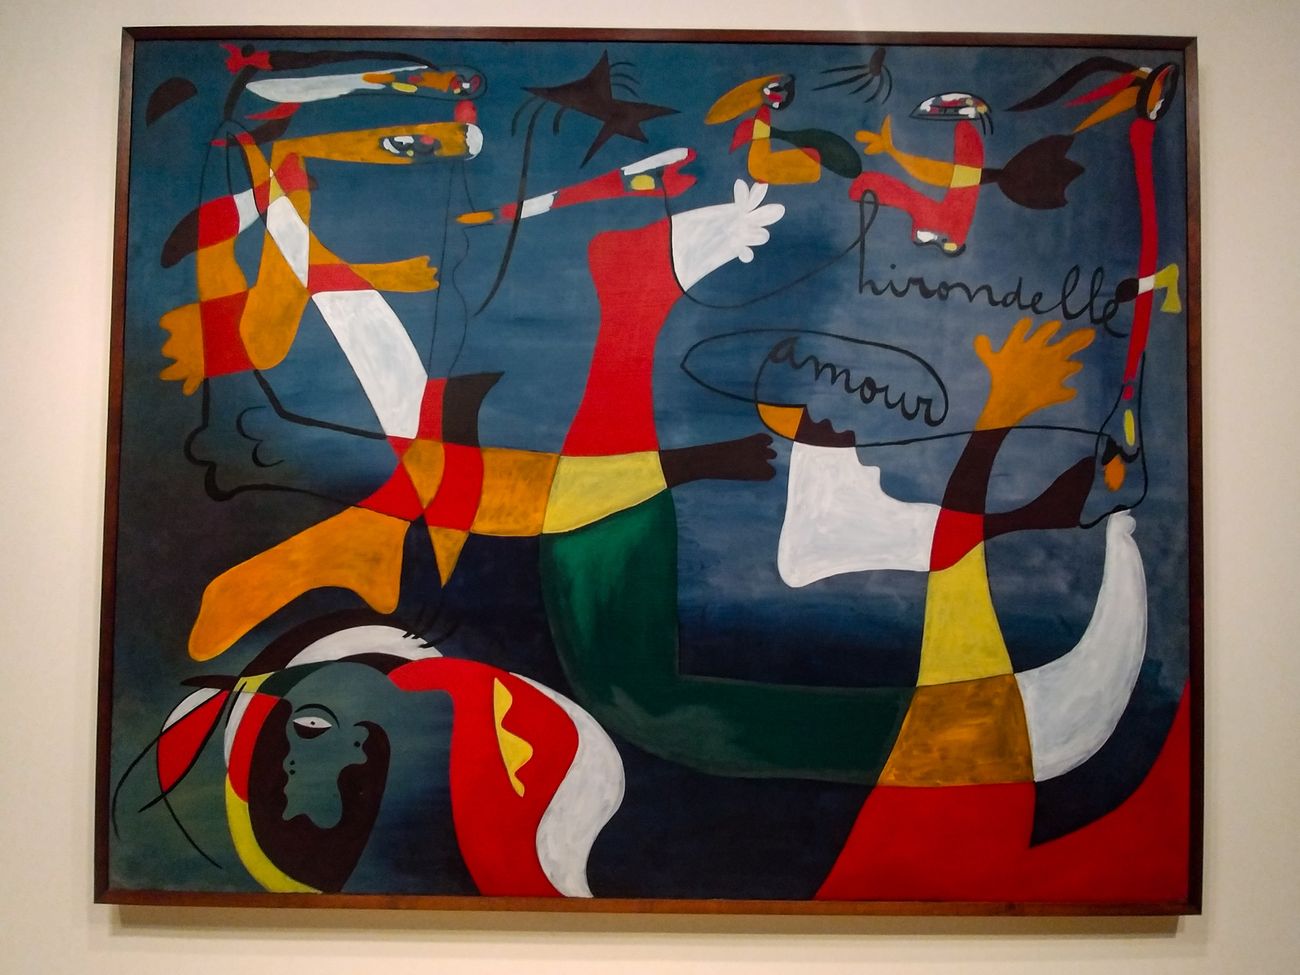 Il dipinto “Hirondelle Amour” (1933 34), compreso nella mostra “Joan Miró. Birth of the World” al MoMA, New York 2019. Photo Maurita Cardone